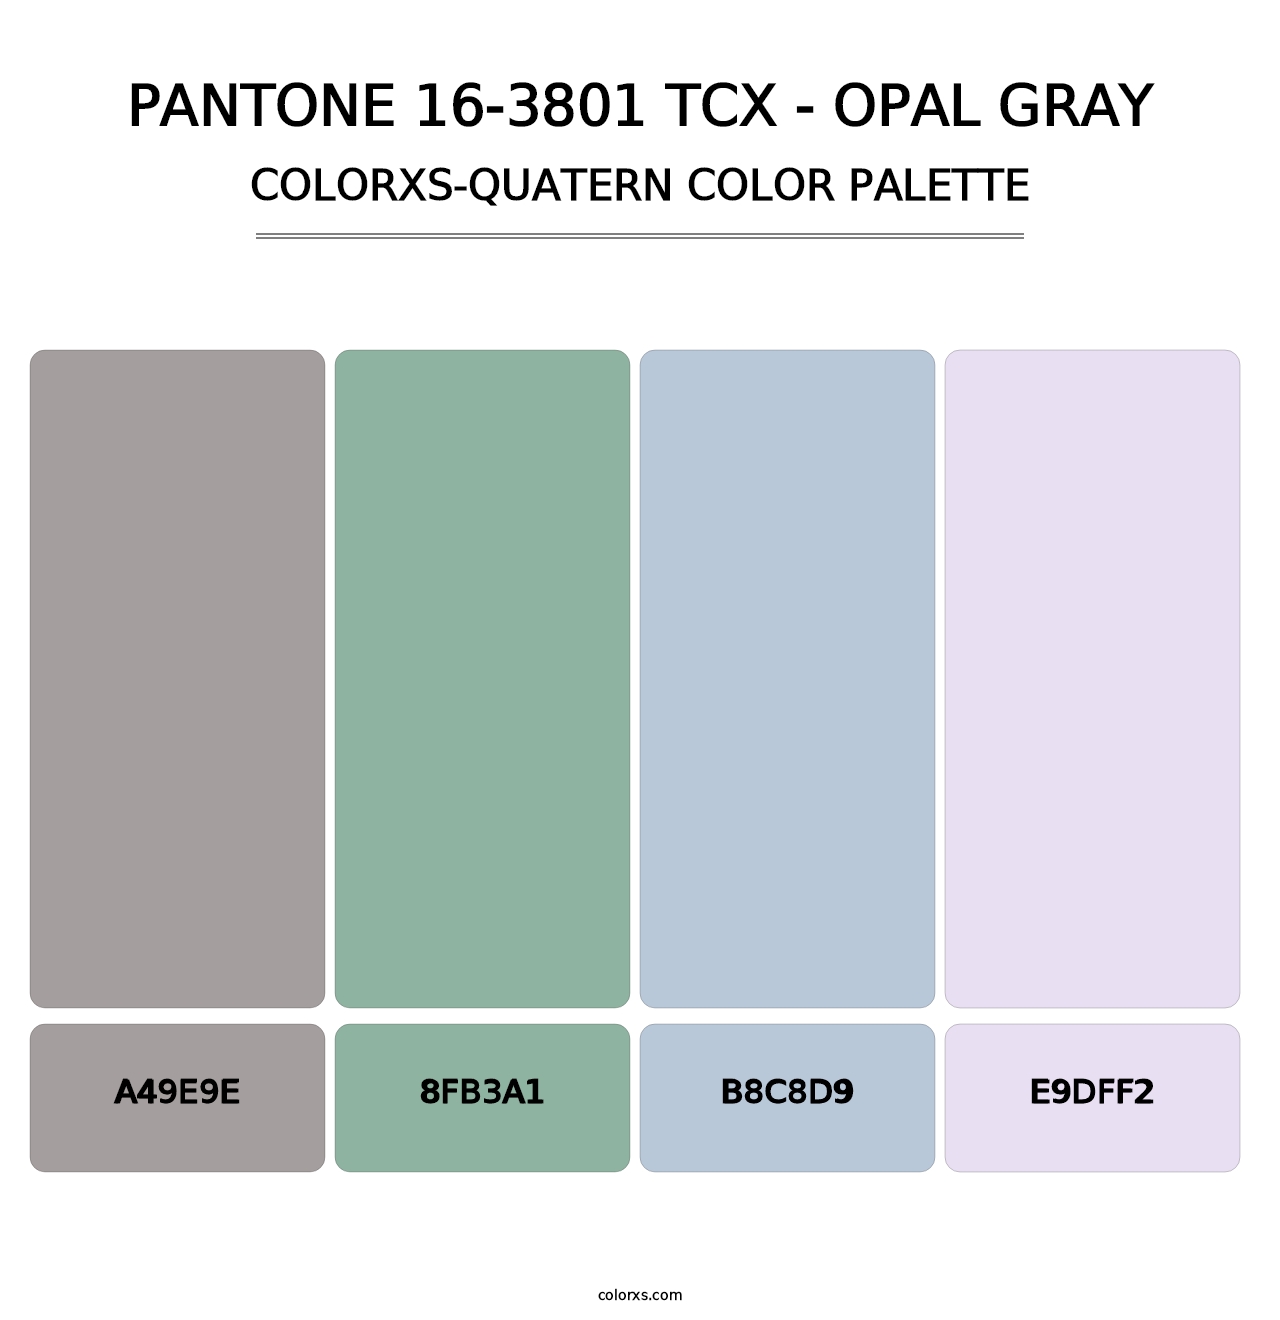 PANTONE 16-3801 TCX - Opal Gray - Colorxs Quatern Palette